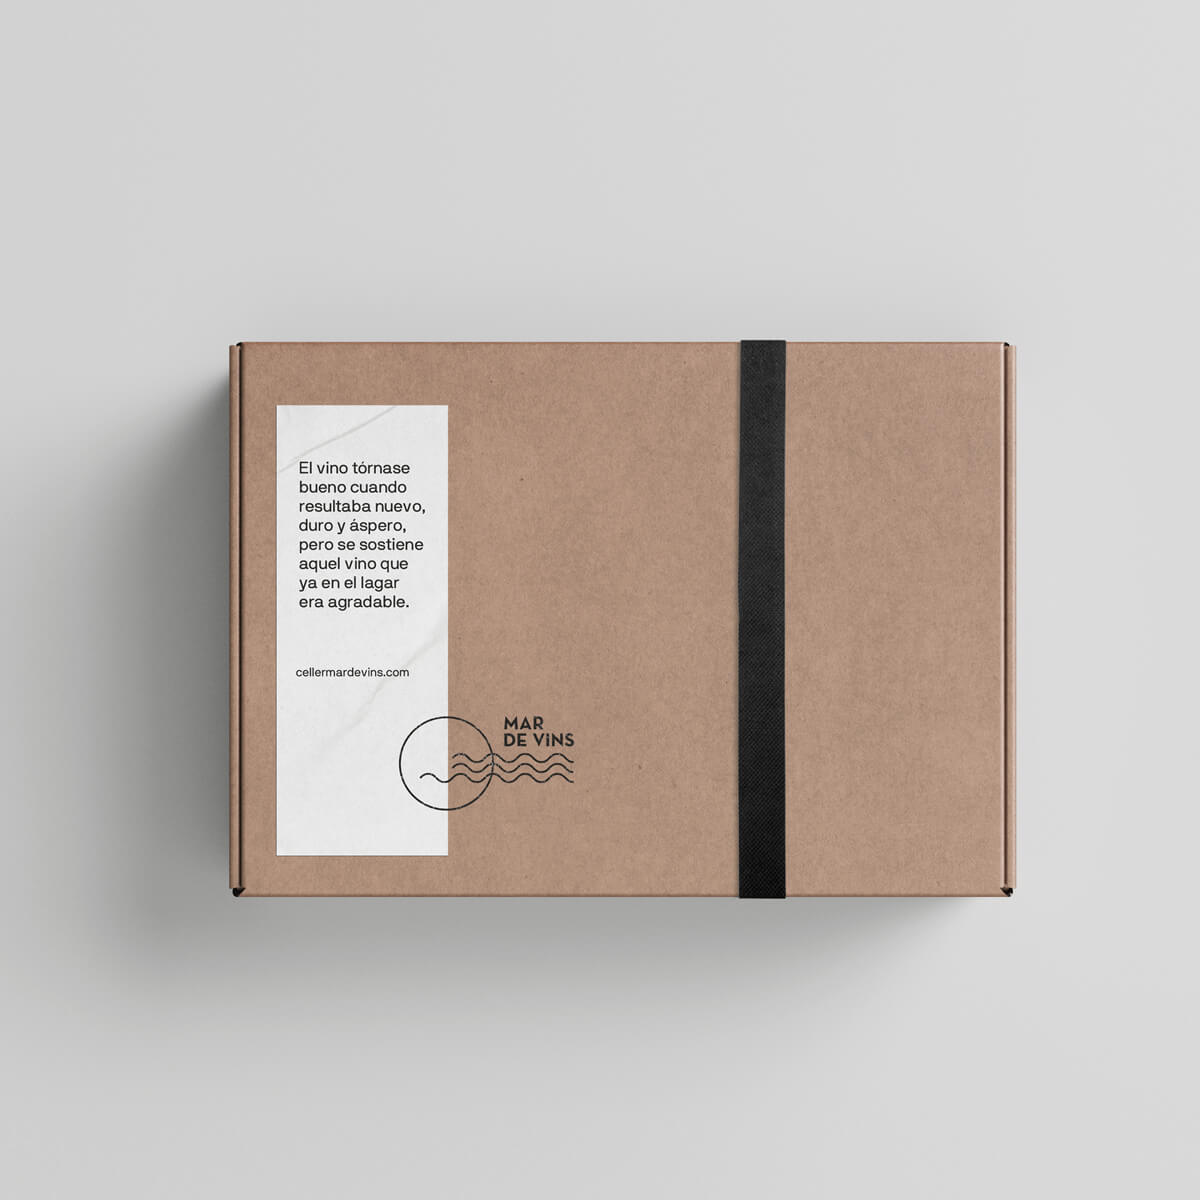 Diseño y desarrollo de identidad visual corporativa para Celler Mar de Vins. Packaging.